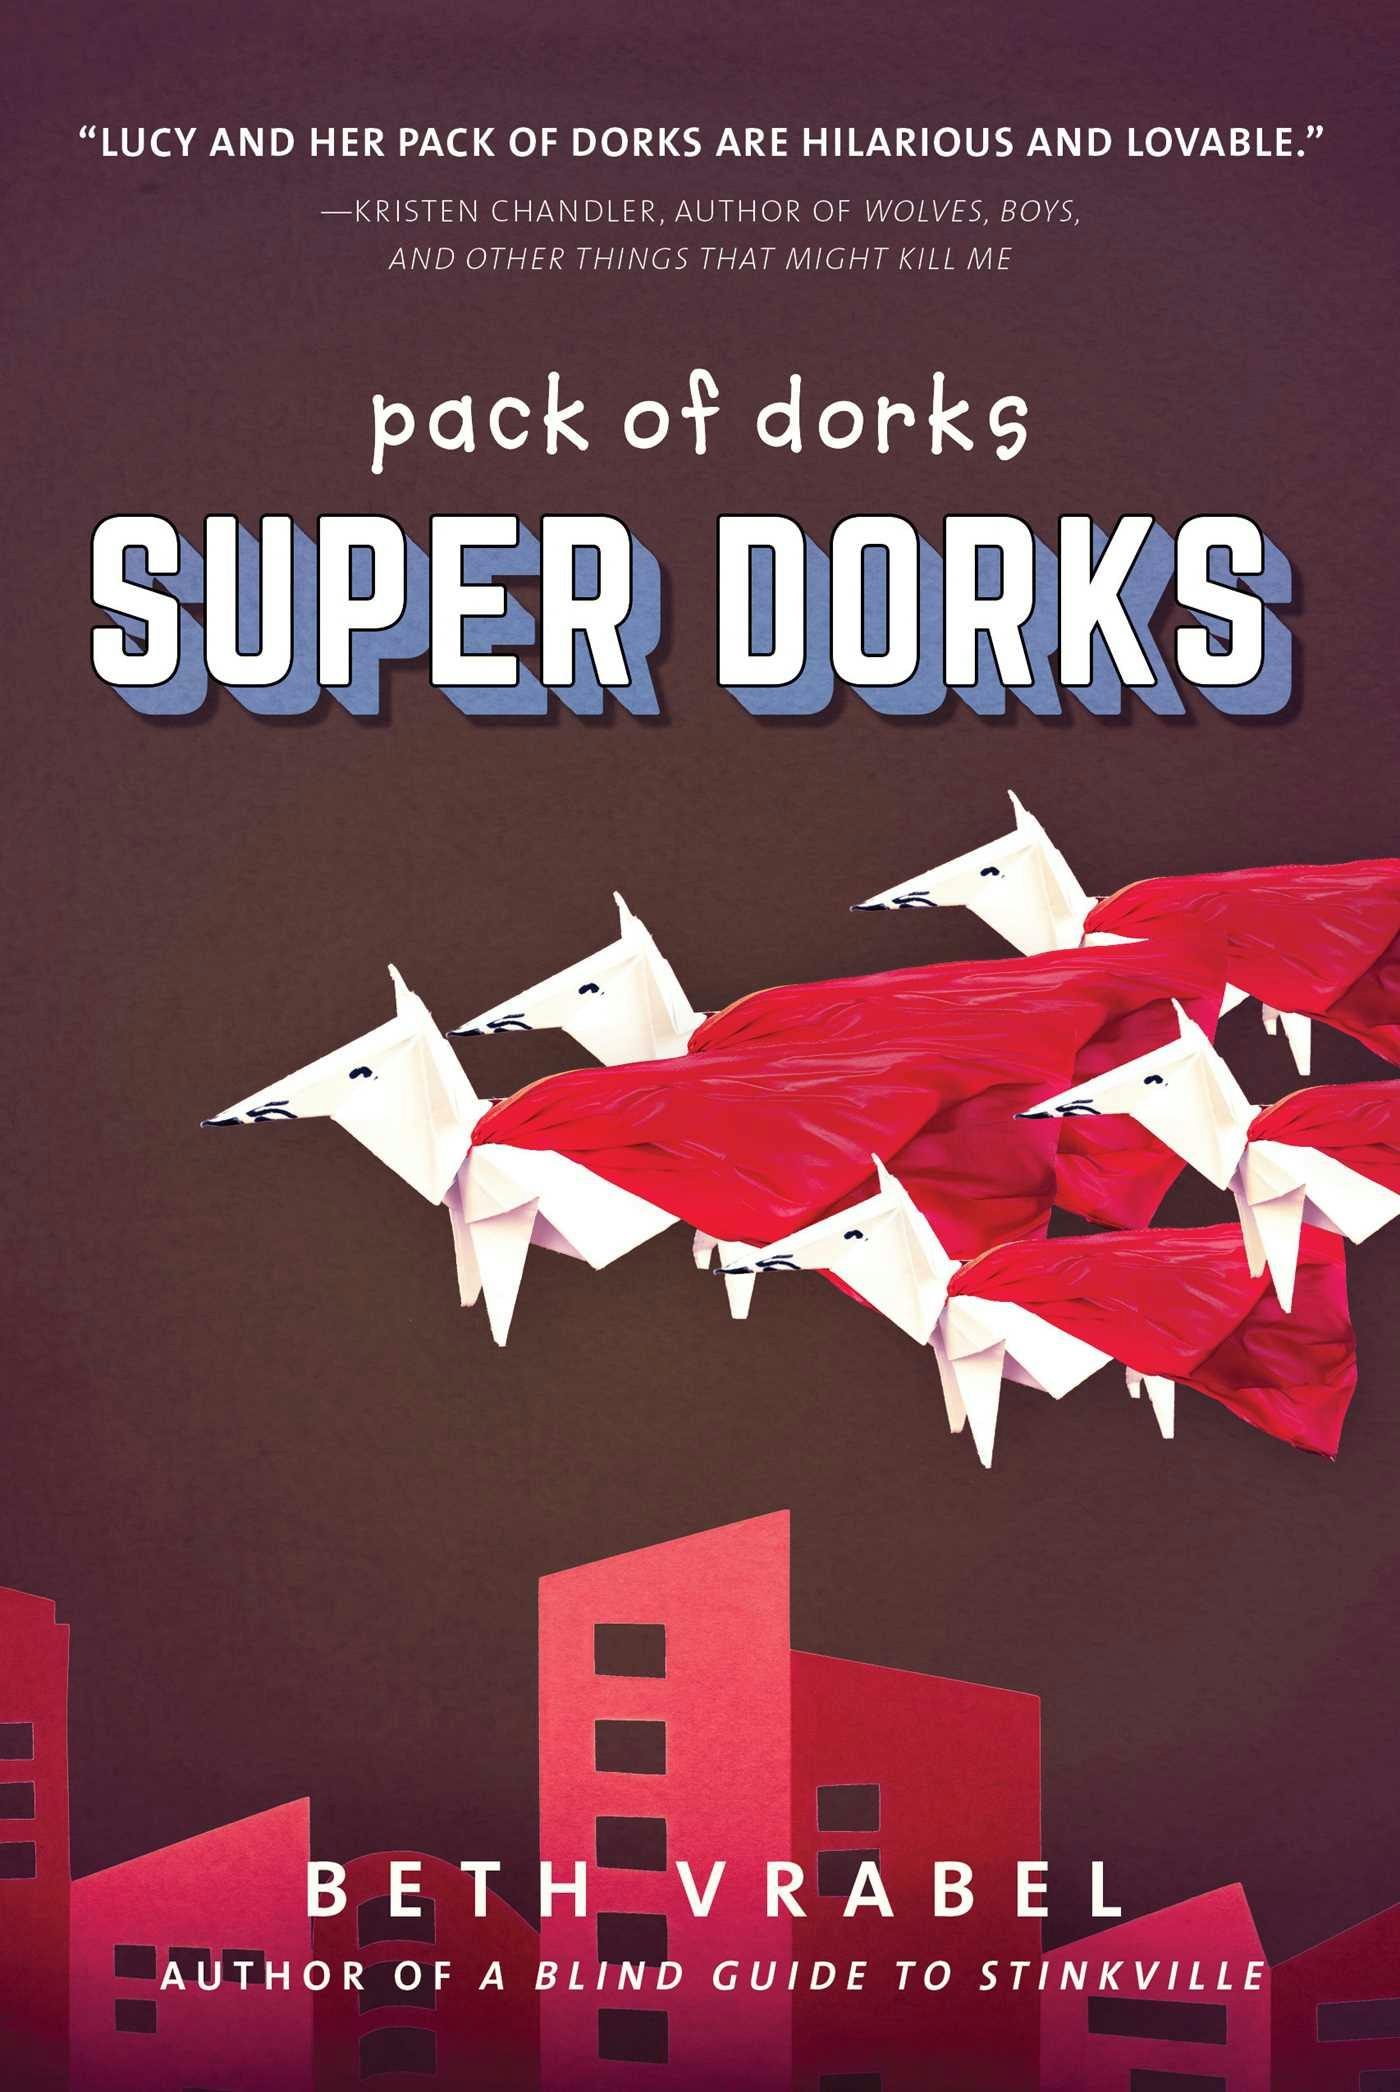 Super Dorks - Beth Vrabel